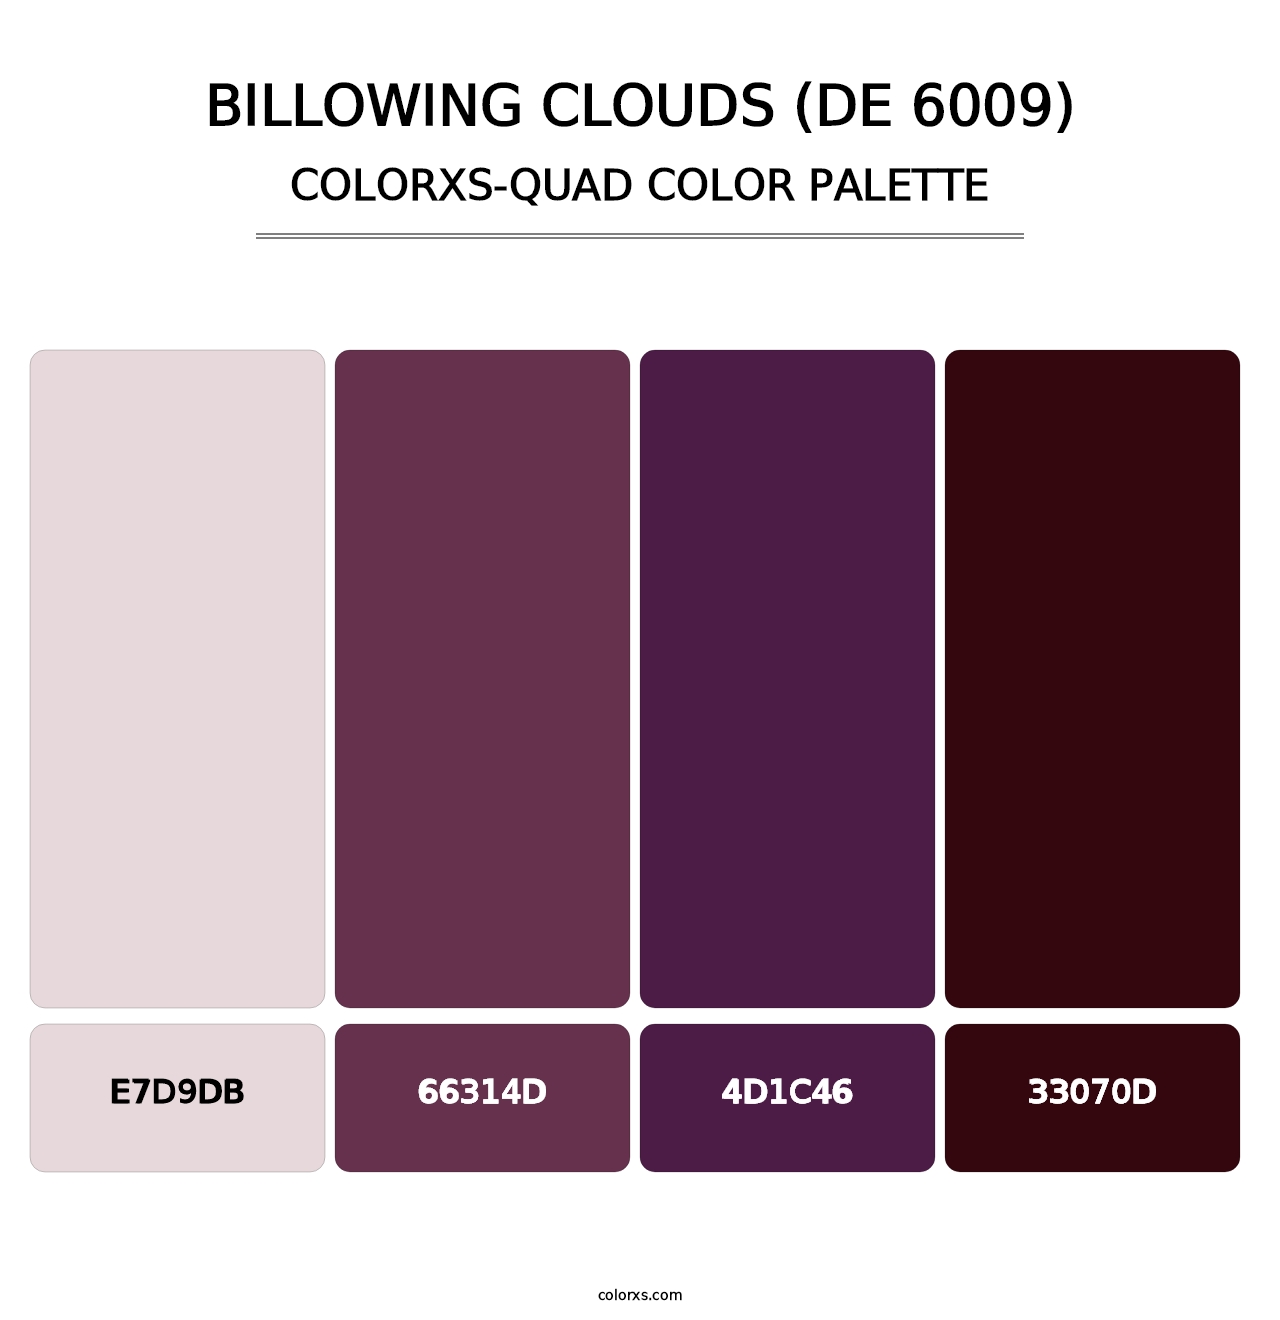 Billowing Clouds (DE 6009) - Colorxs Quad Palette